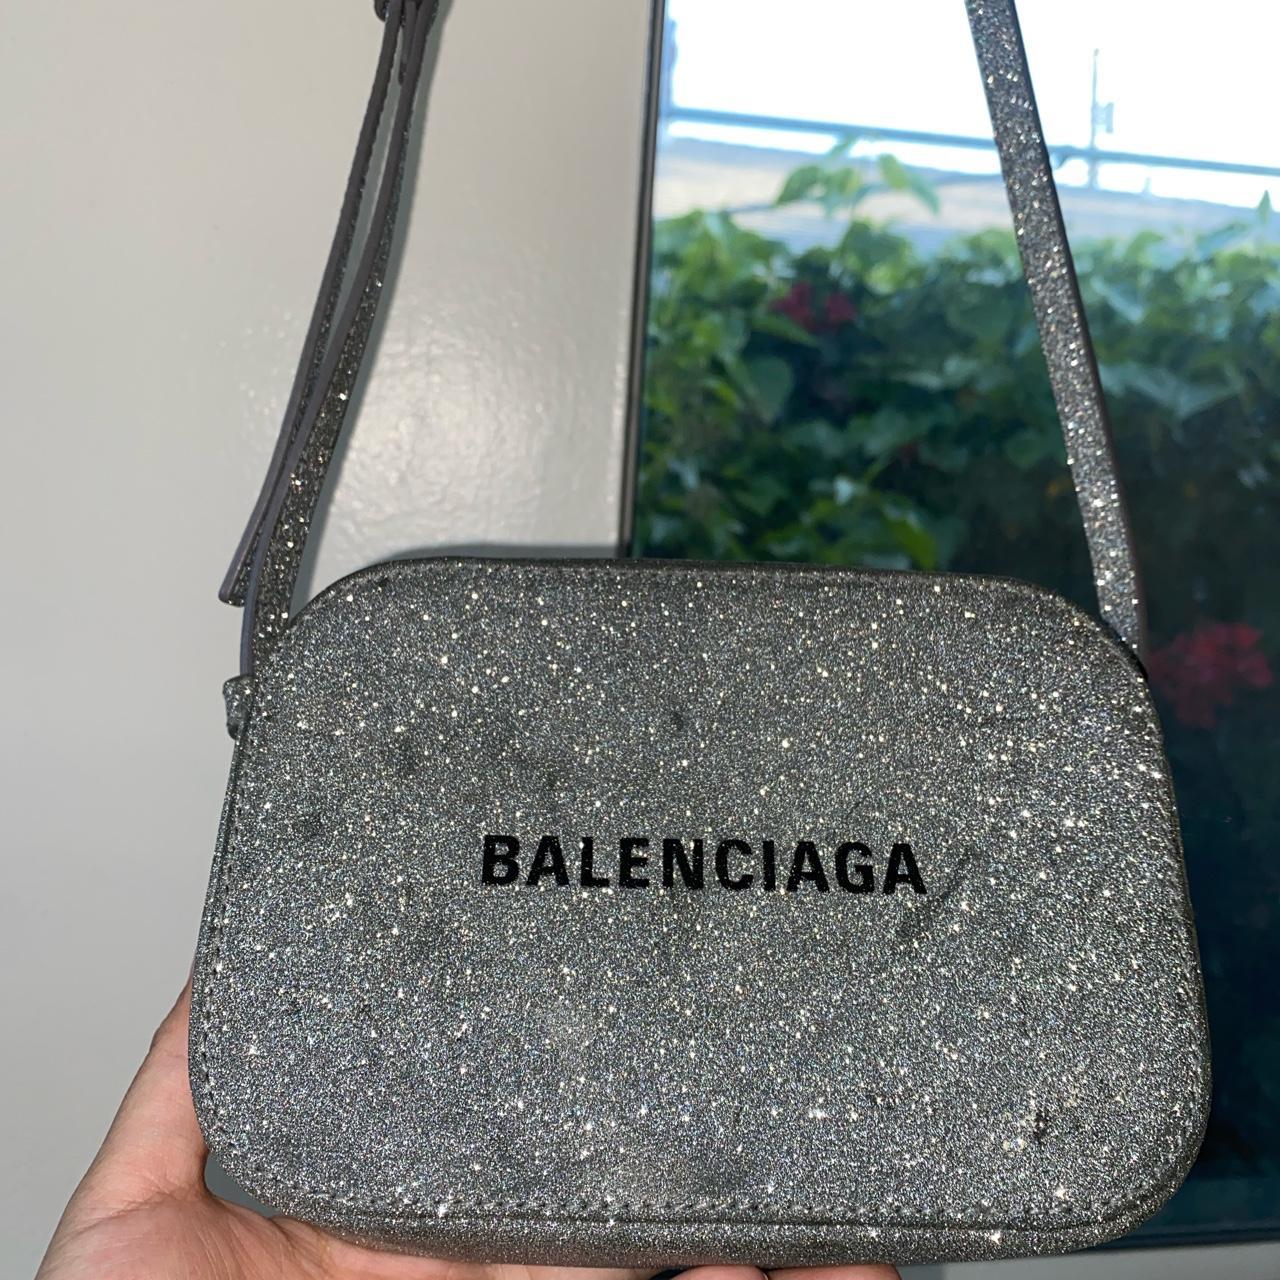 Balenciaga small purse. Perfect for - Depop